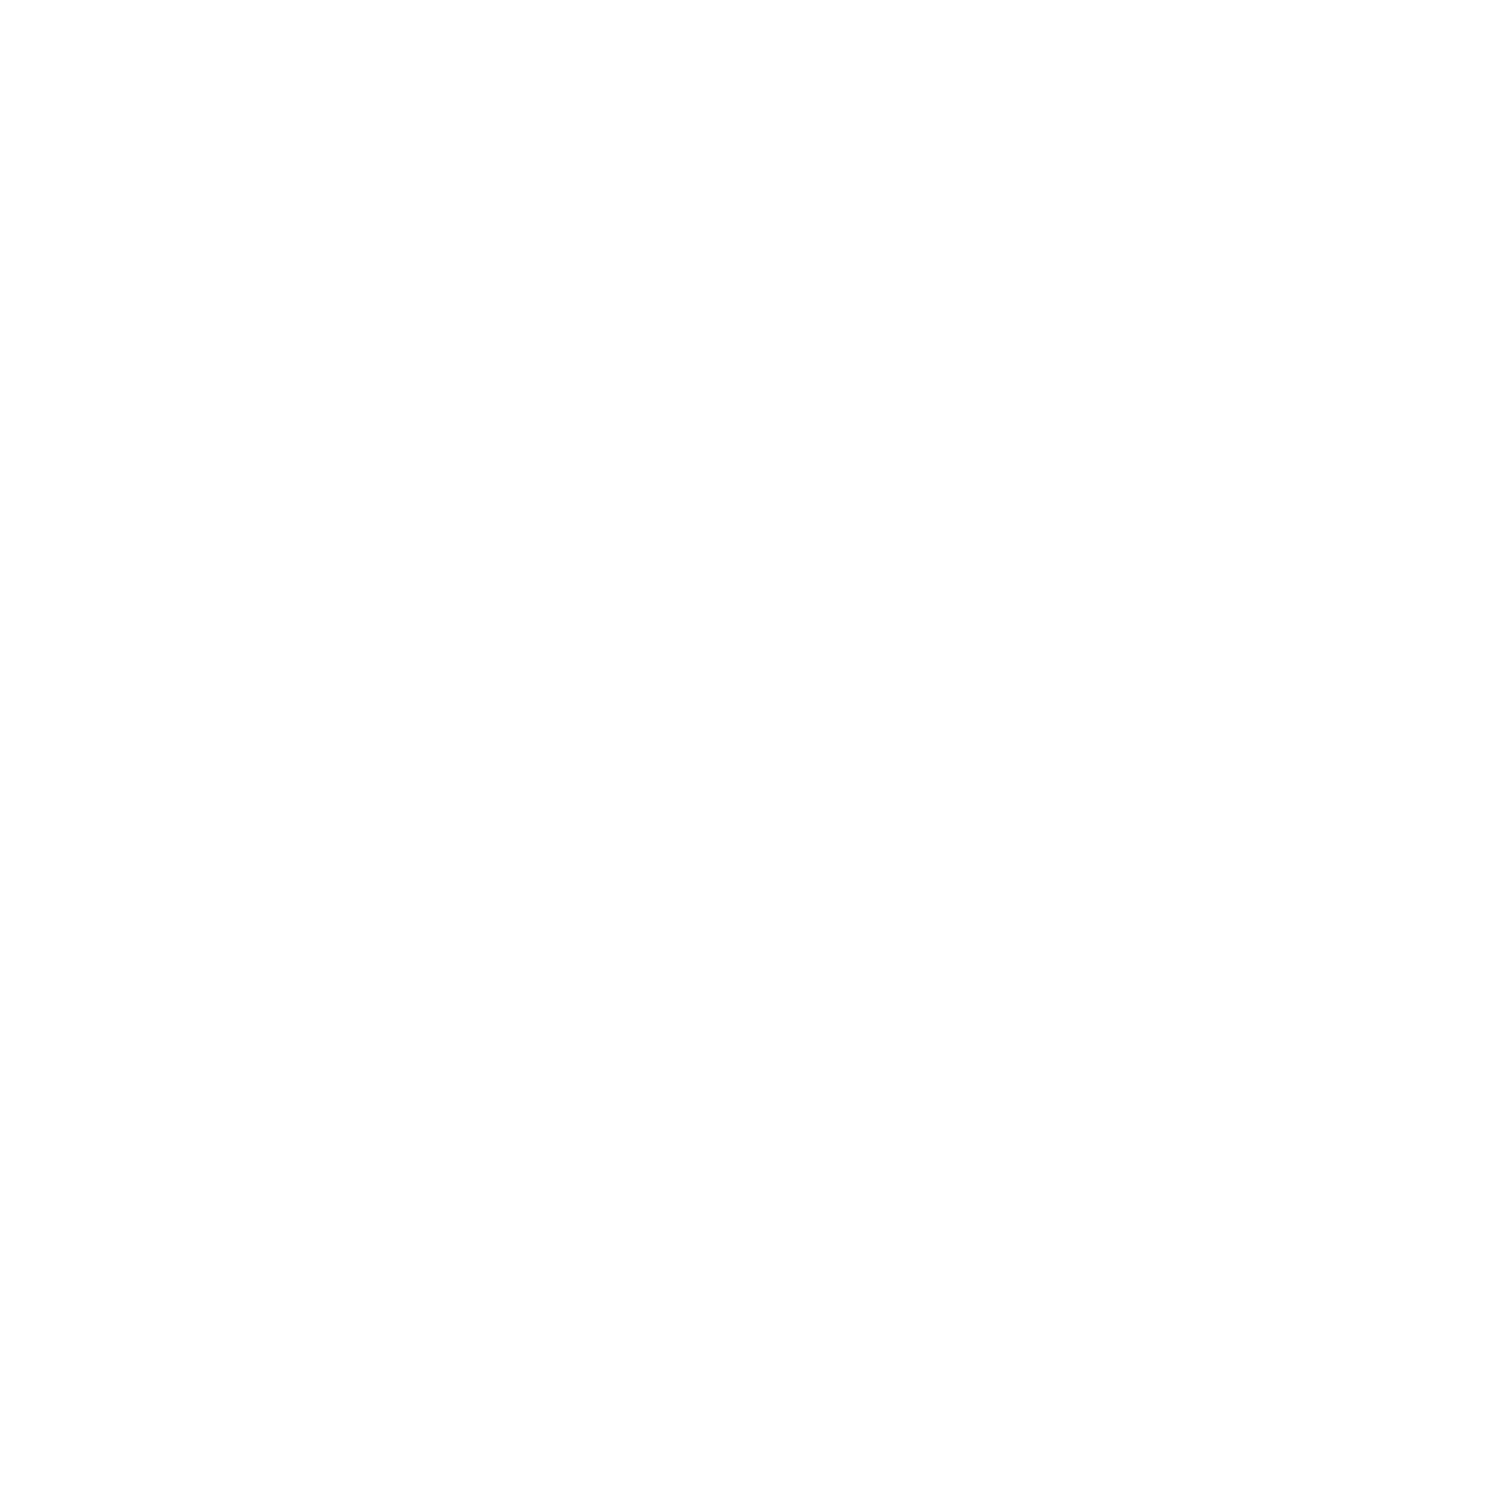 Bruce Kuo Design